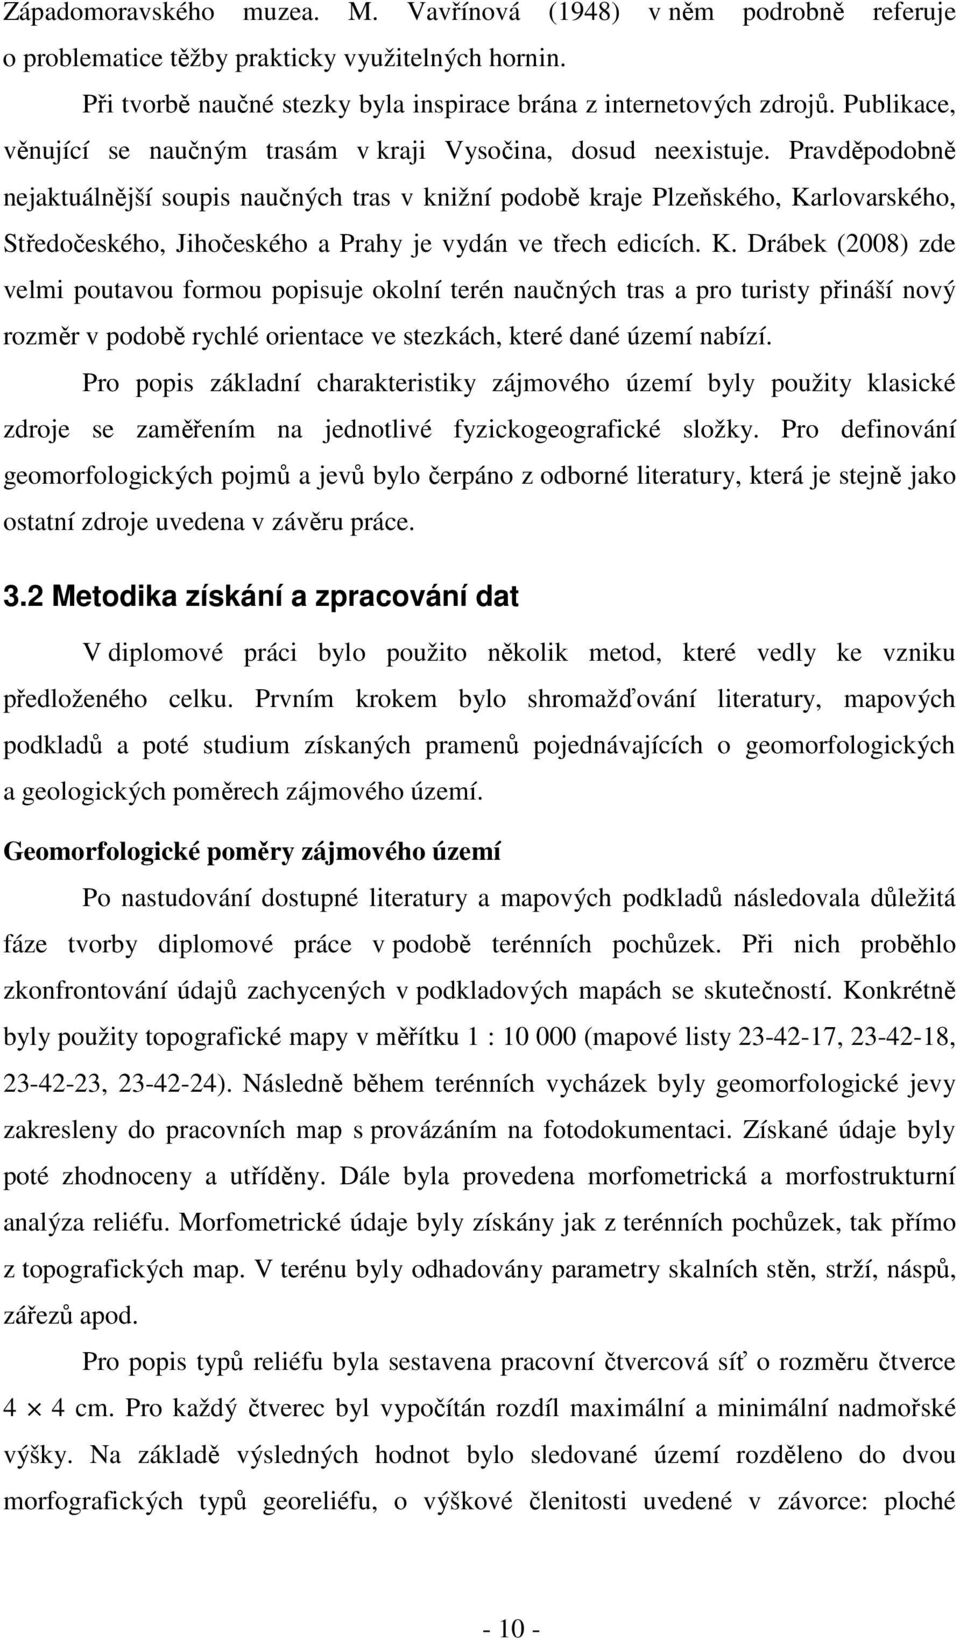 Pravděpodobně nejaktuálnější soupis naučných tras v knižní podobě kraje Plzeňského, Ka